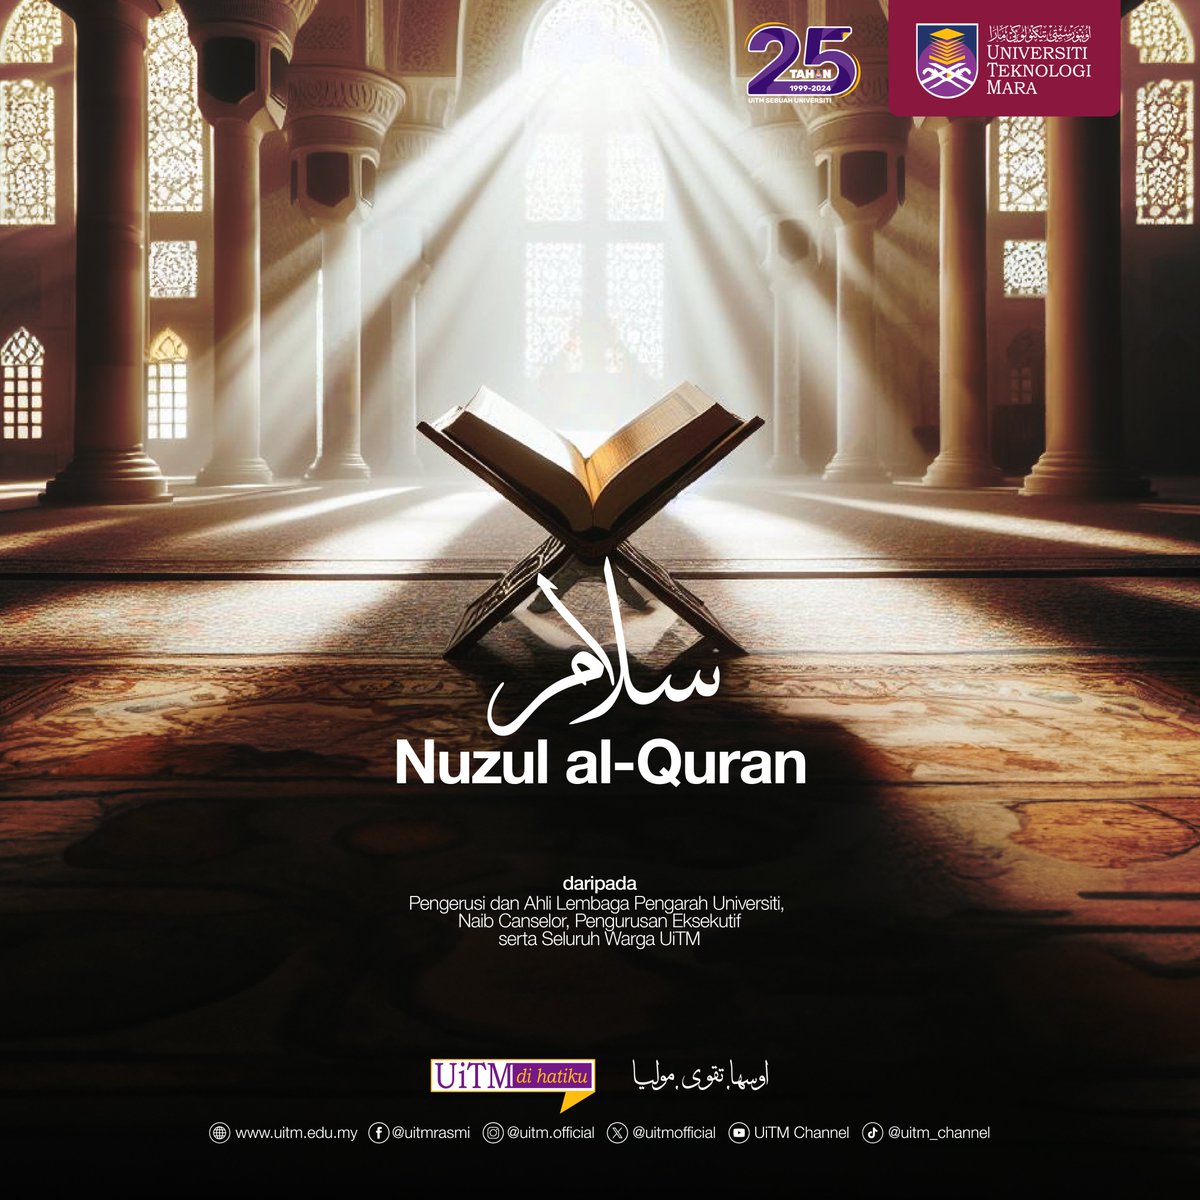 Universiti Teknologi MARA mengucapkan Salam Nuzul Al-Quran kepada seluruh umat Islam. Semoga pada malam yang penuh berkat ini, kita semua dapat merenungkan kebesaran Al-Quran dan mengambil iktibar dari petunjuk yang terkandung di dalamnya. #UiTM #UiTMDiHatiku #UiTM25Tahun